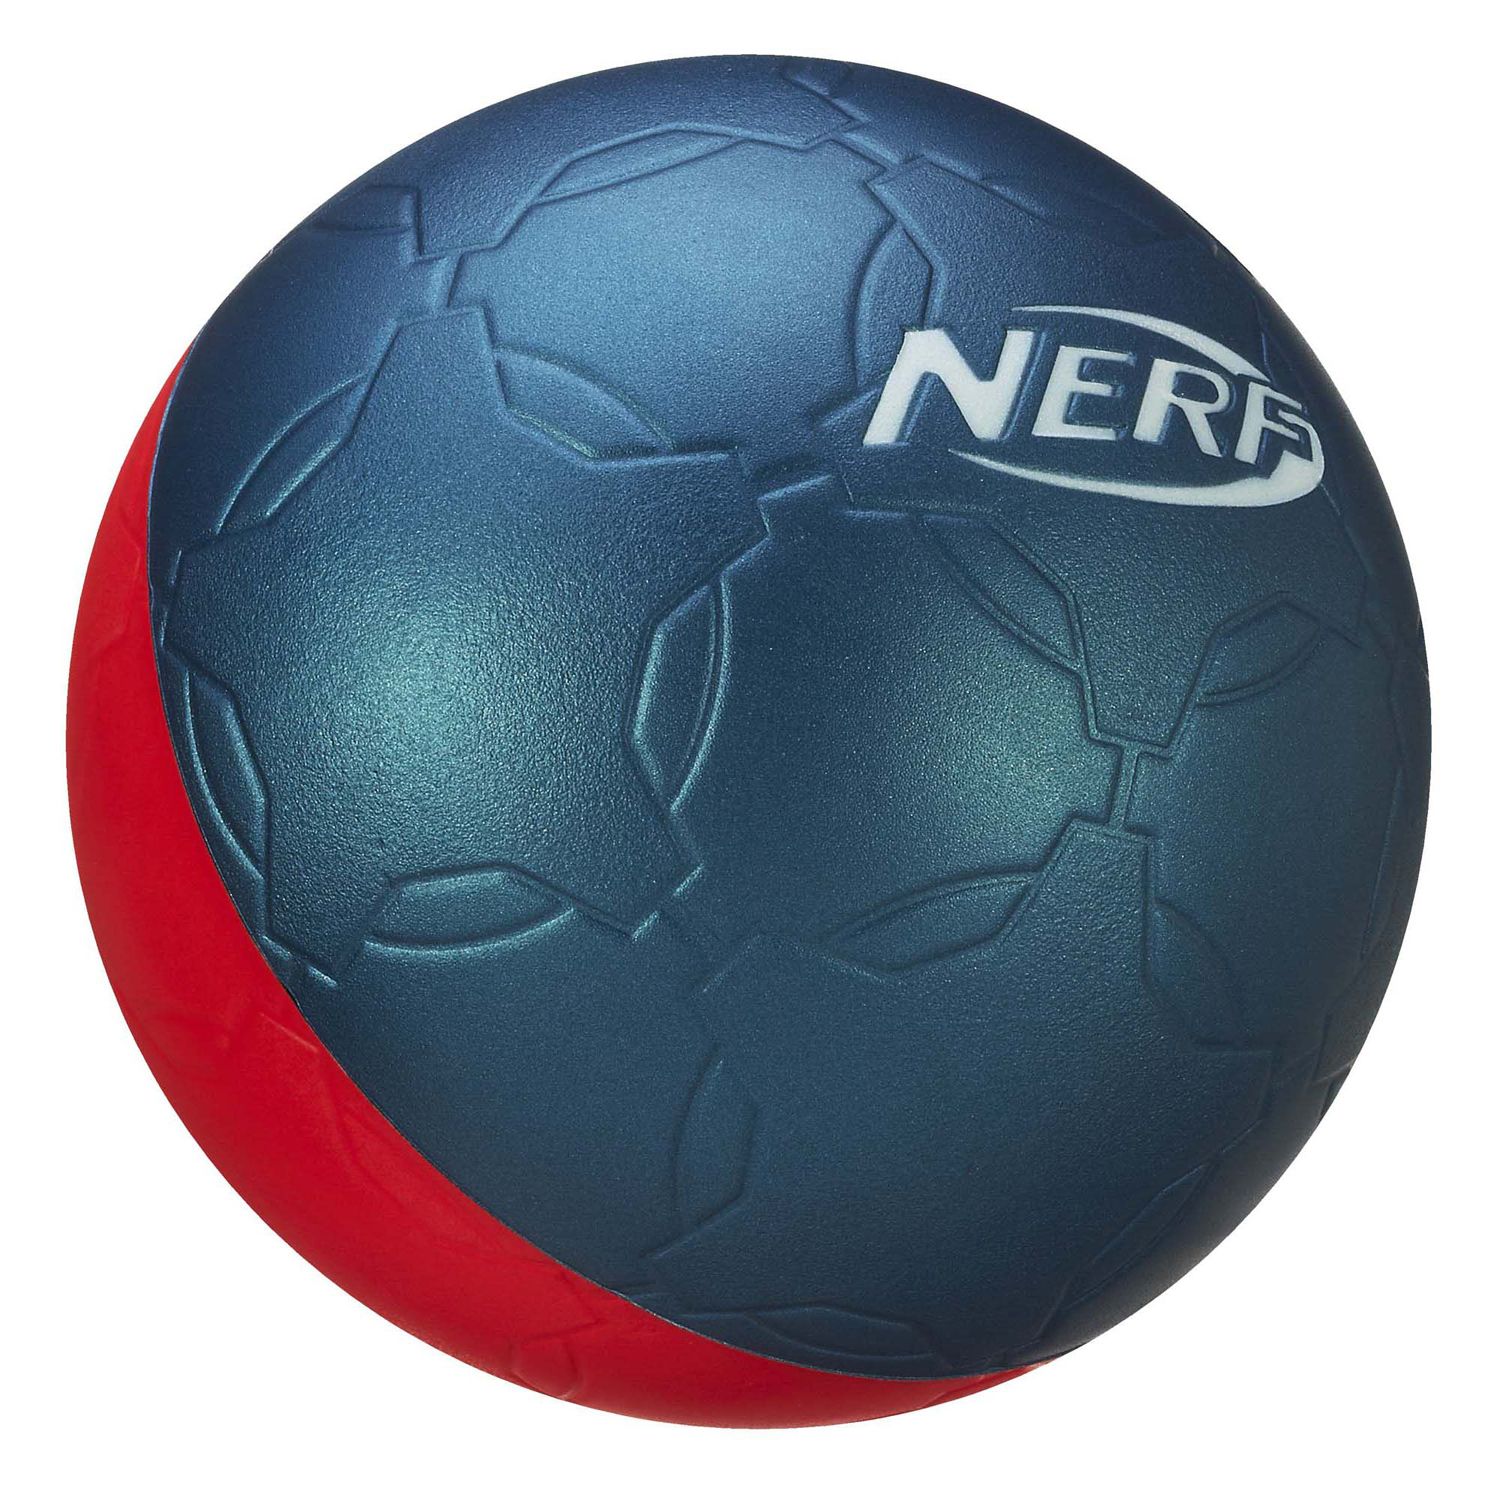 Nerf Pro Foam Soccer Ball by Hasbro